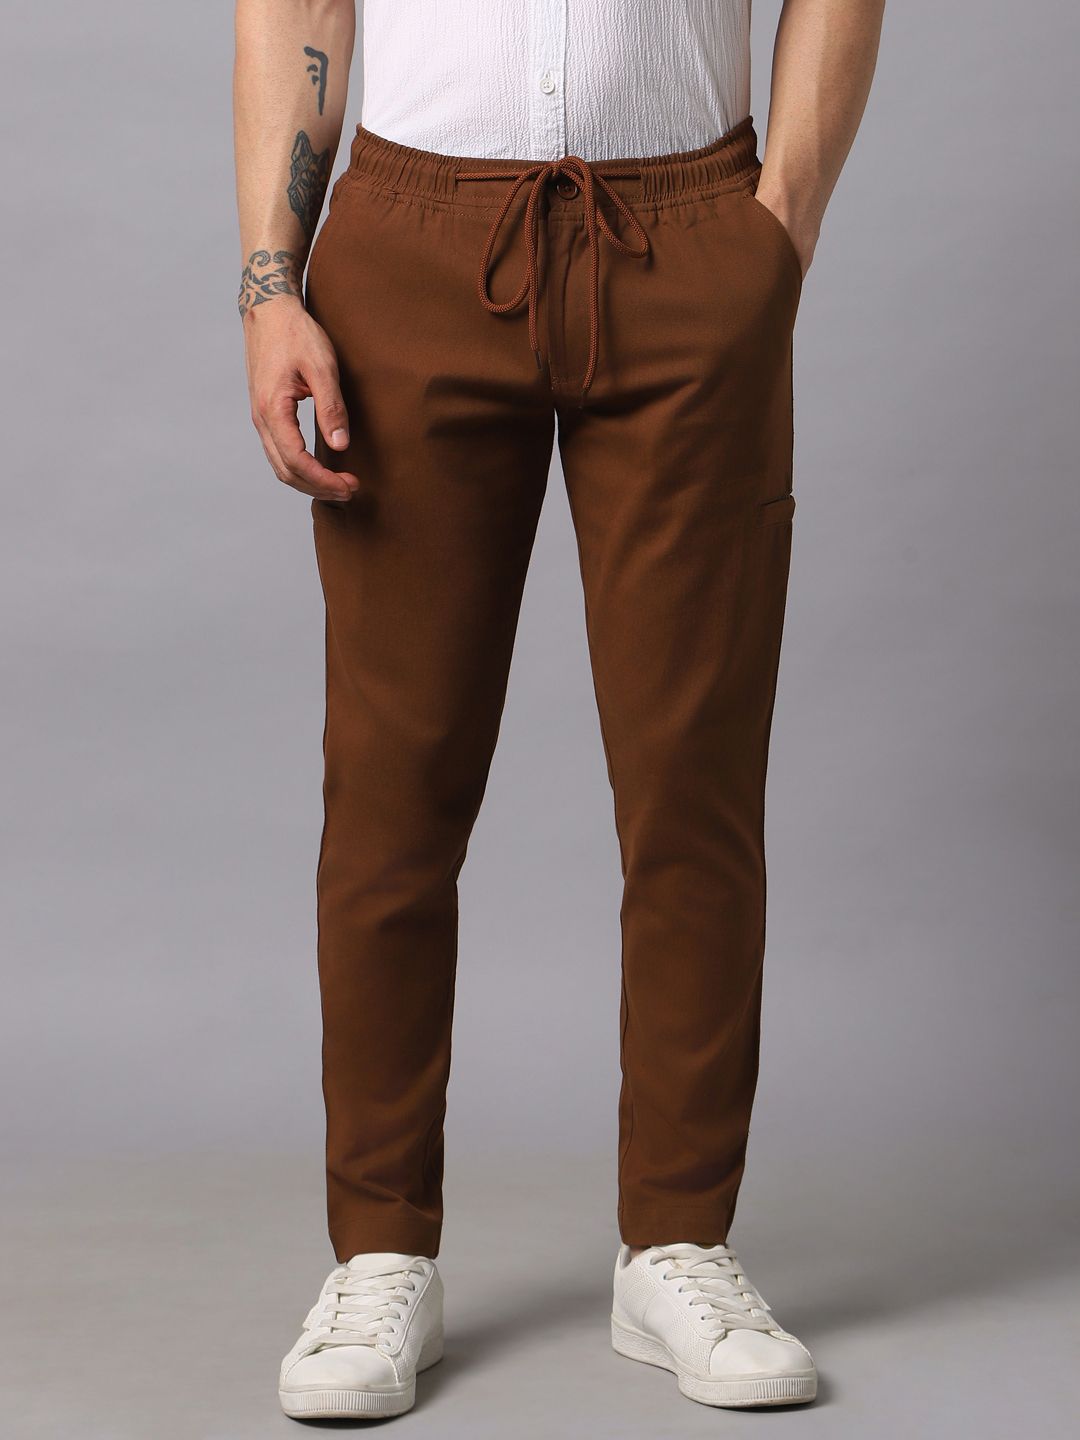 Buy Cream Trousers & Pants for Men by Hubberholme Online